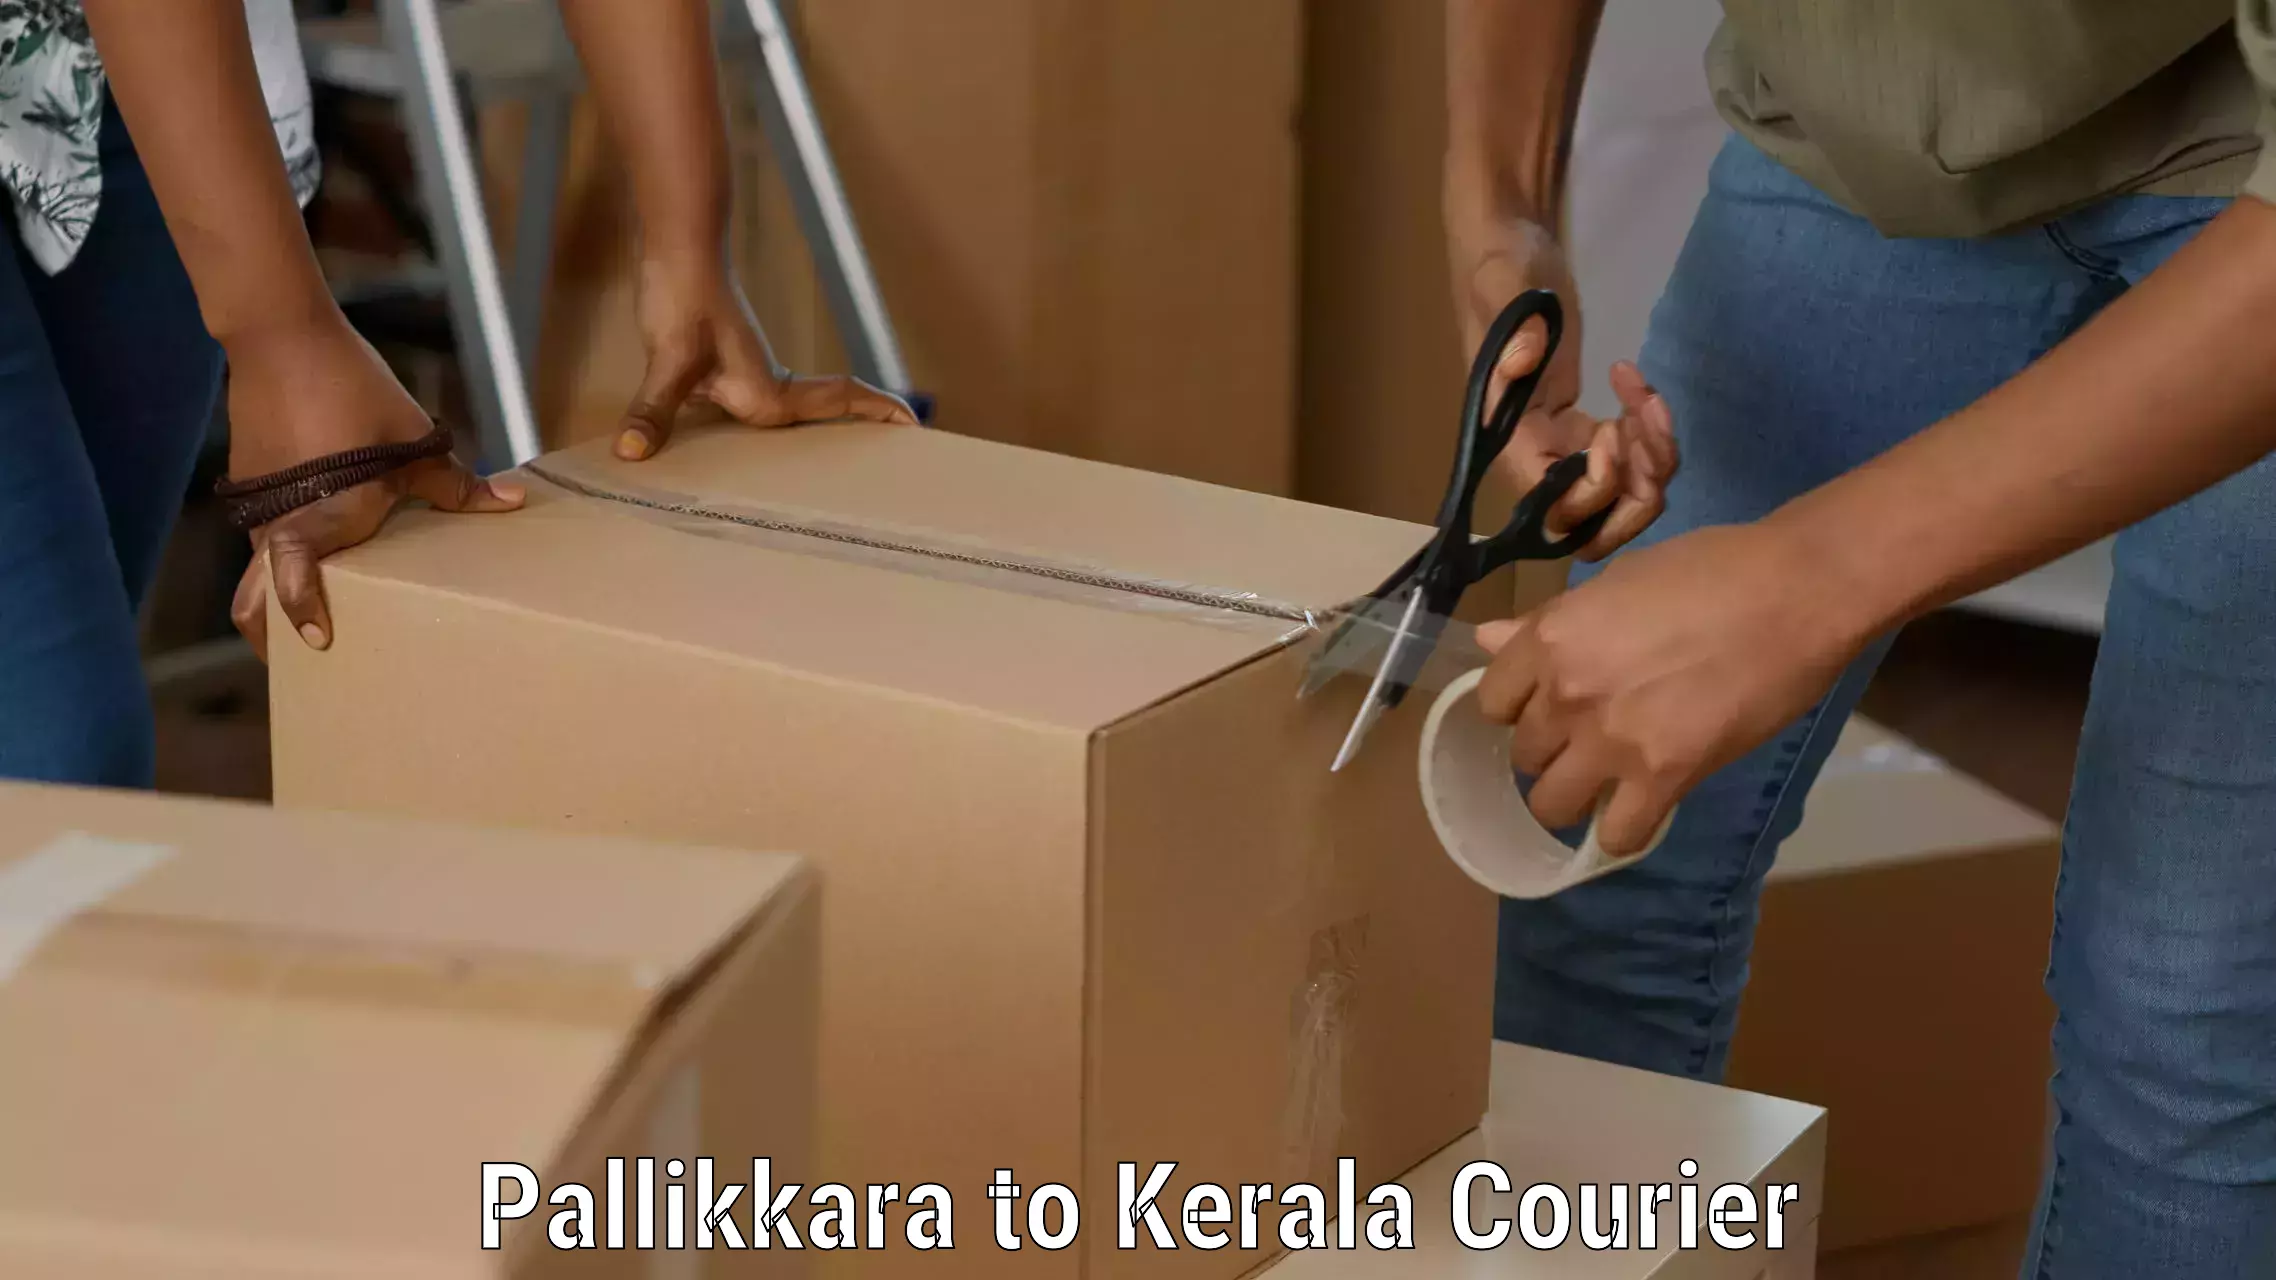 Courier service efficiency Pallikkara to Palakkad